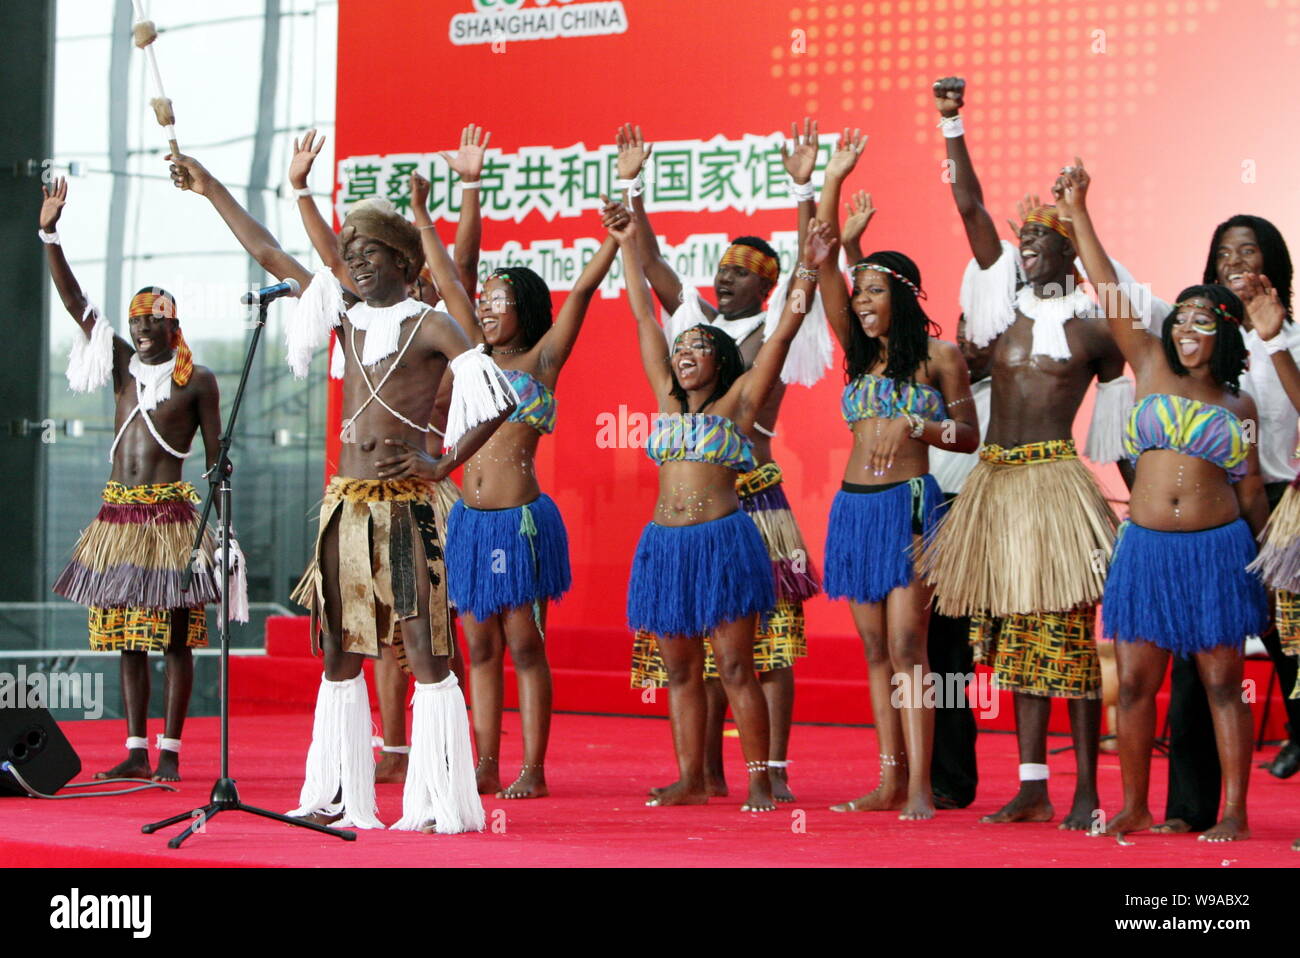 Animatori mozambicana eseguire durante una celebrazione per la Giornata nazionale per la Repubblica del Mozambico nel mondo Expo Park in Cina a Shanghai, 25 Foto Stock